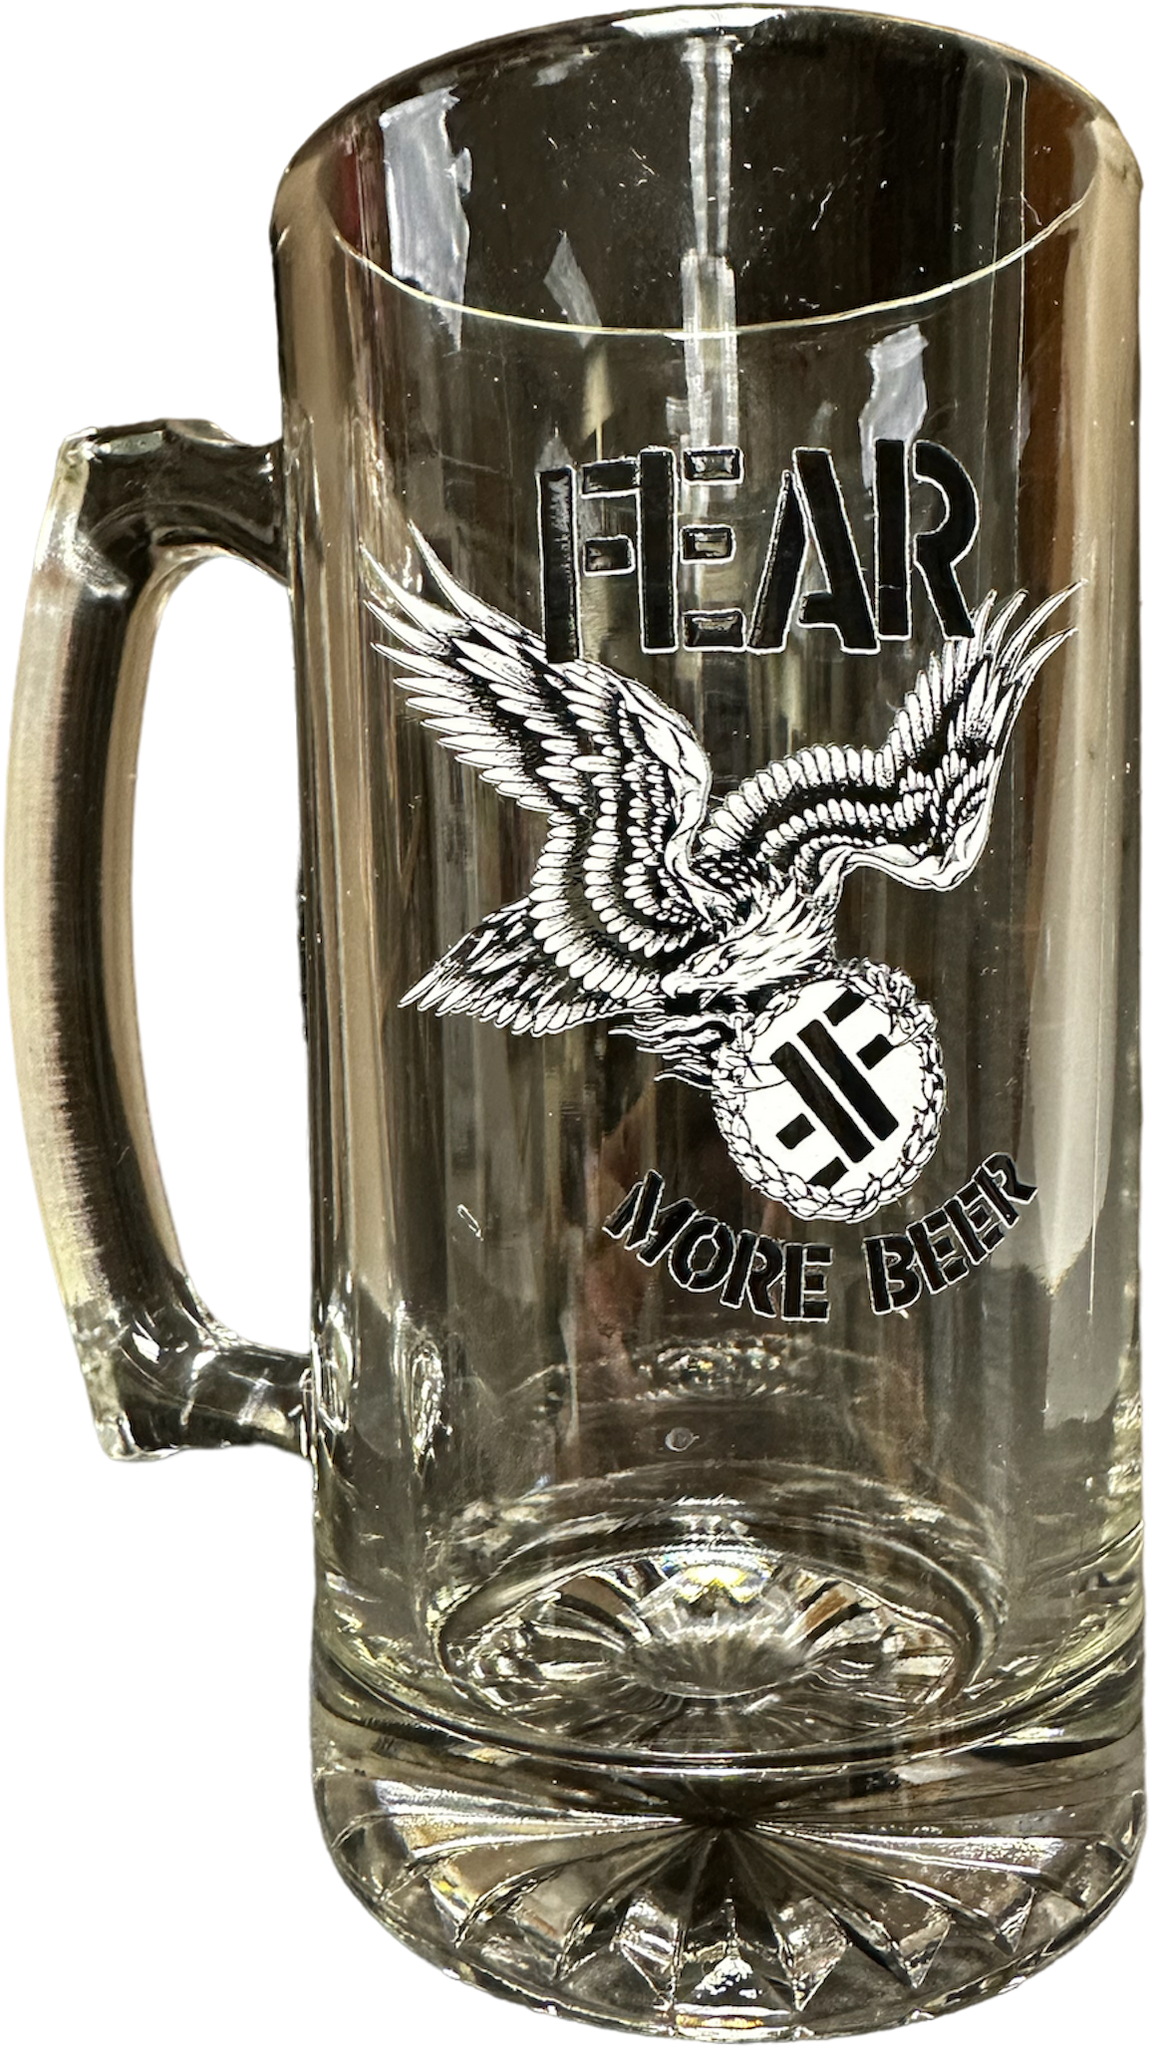 FEAR "MORE BEER" GLASS BEER MUG